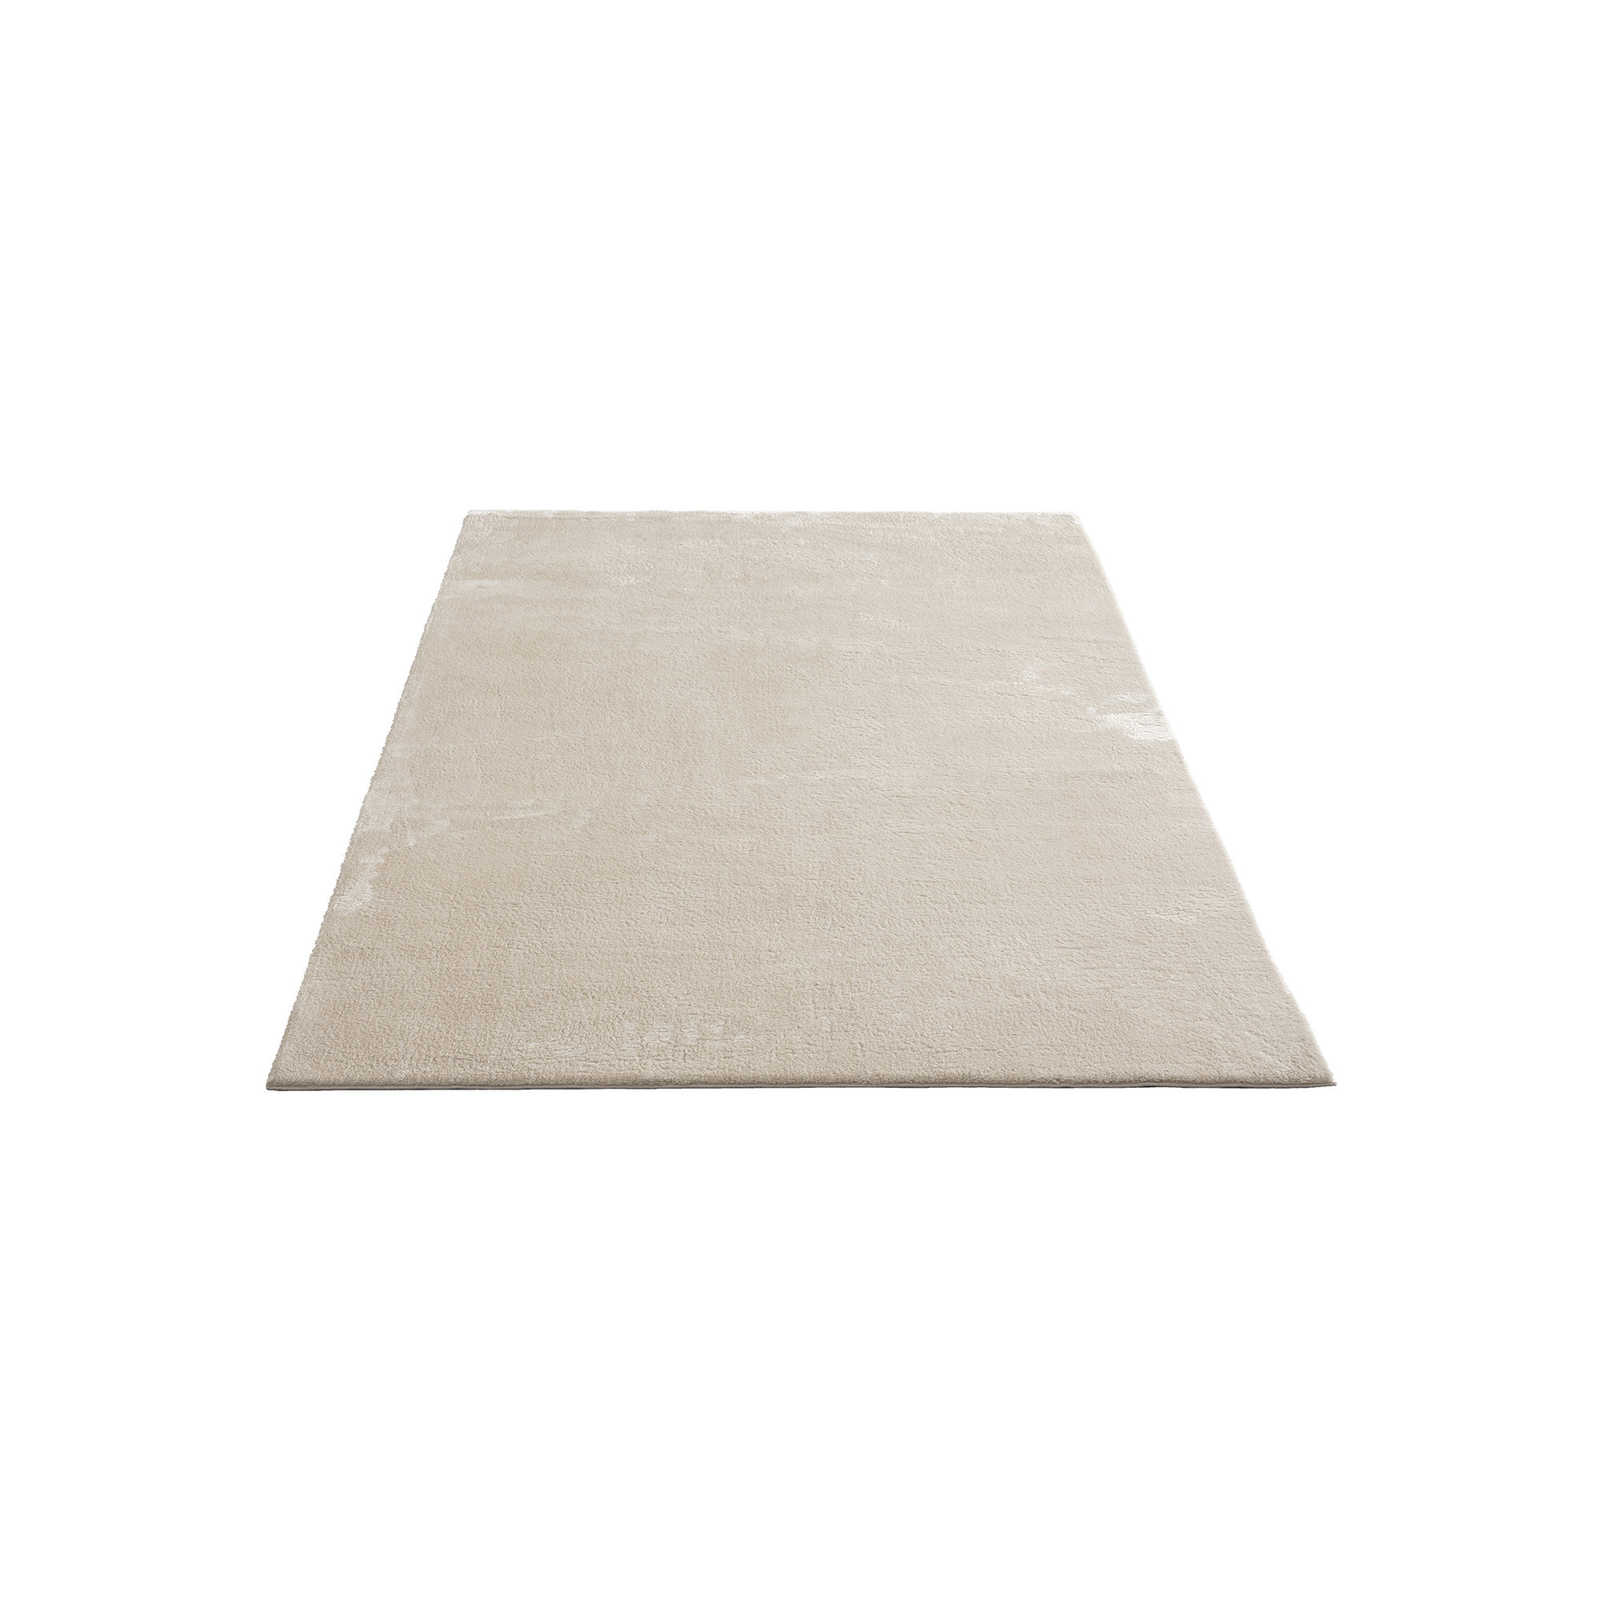 Weicher Hochflor Teppich in Beige – 230 x 160 cm
